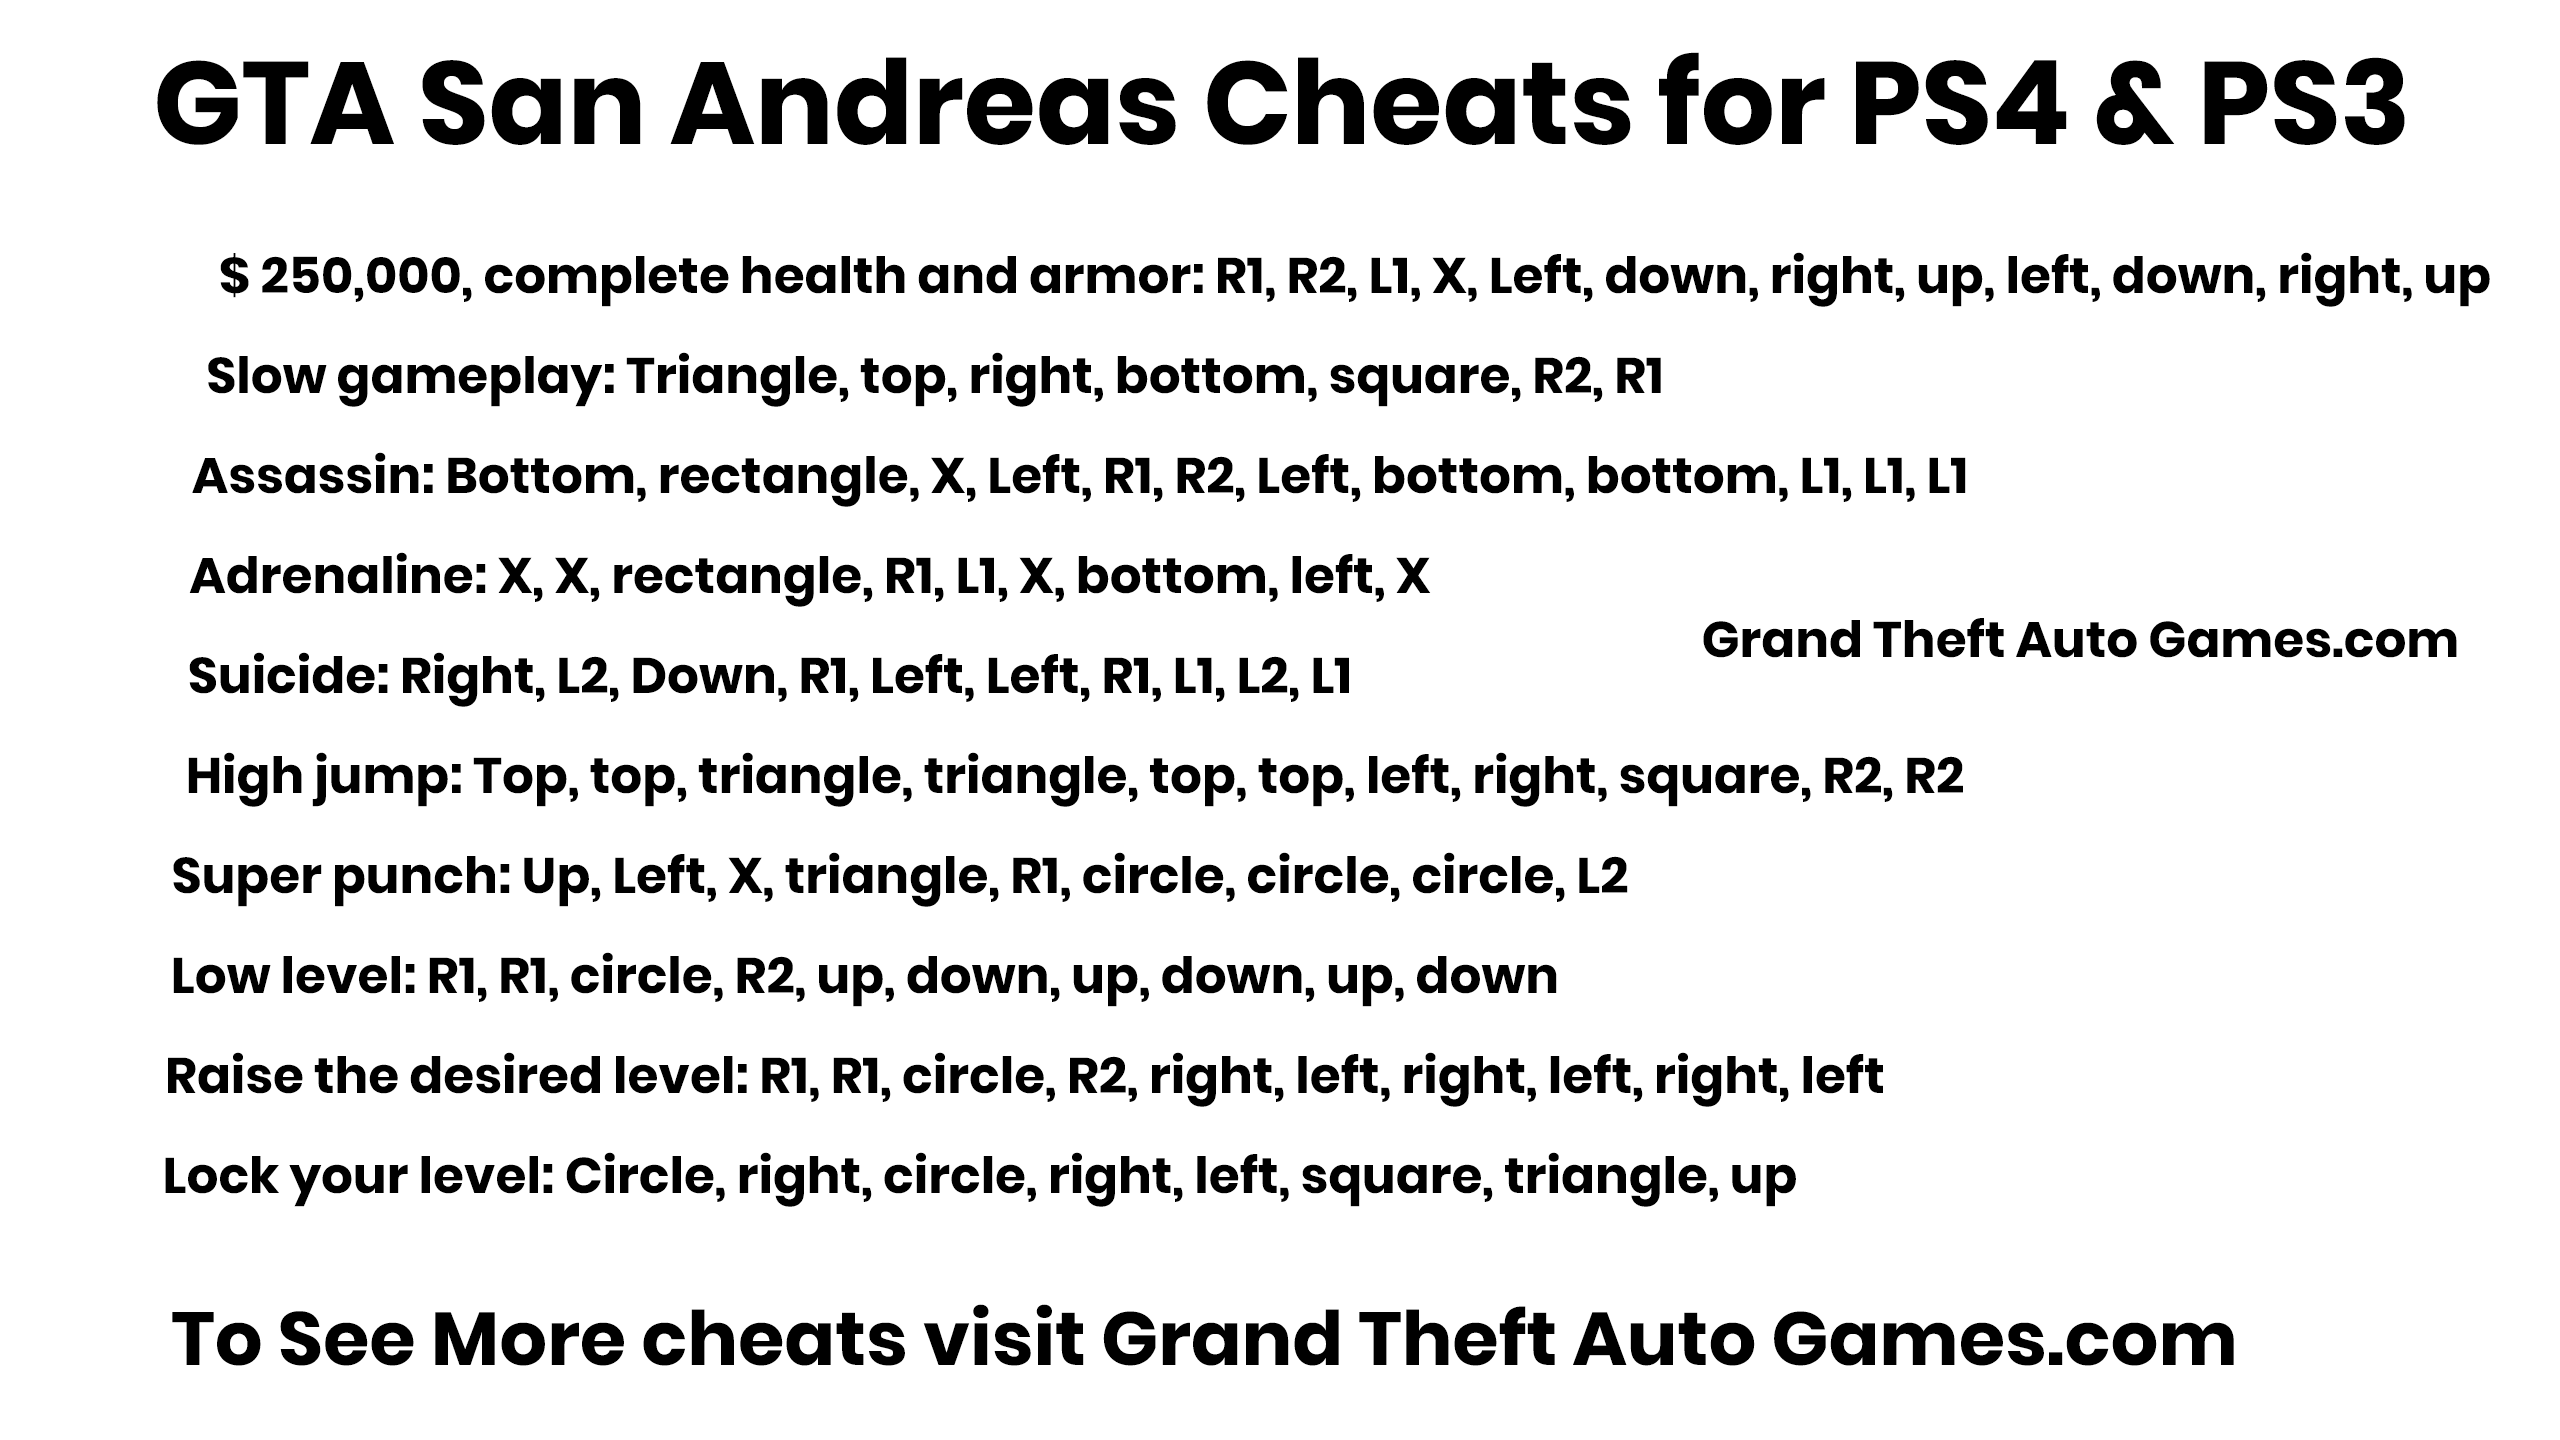 GTA San Andreas Cheats for PS4 & PS3